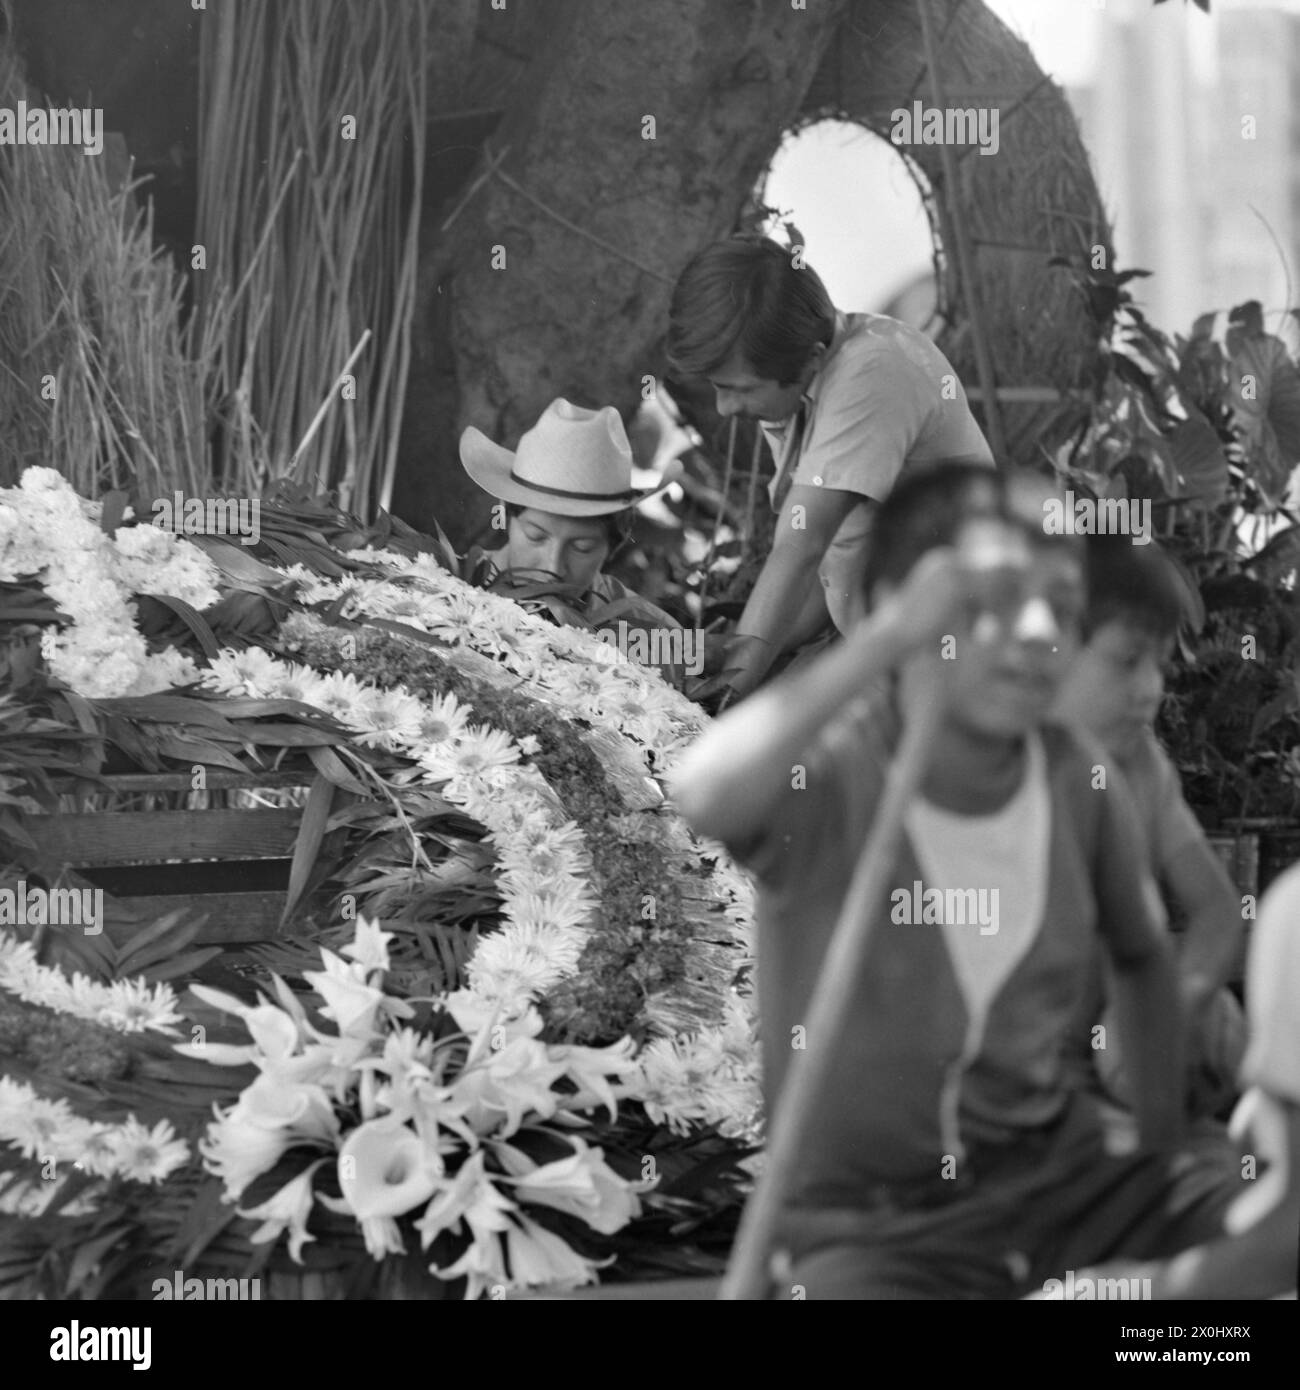 Deux hommes travaillent sur une grande couronne de fleurs à Guernavaca. L'un d'eux porte un chapeau avec un large bord. En arrière-plan vous pouvez voir d'autres matériaux et couronnes finies de fleurs. [traduction automatique] Banque D'Images